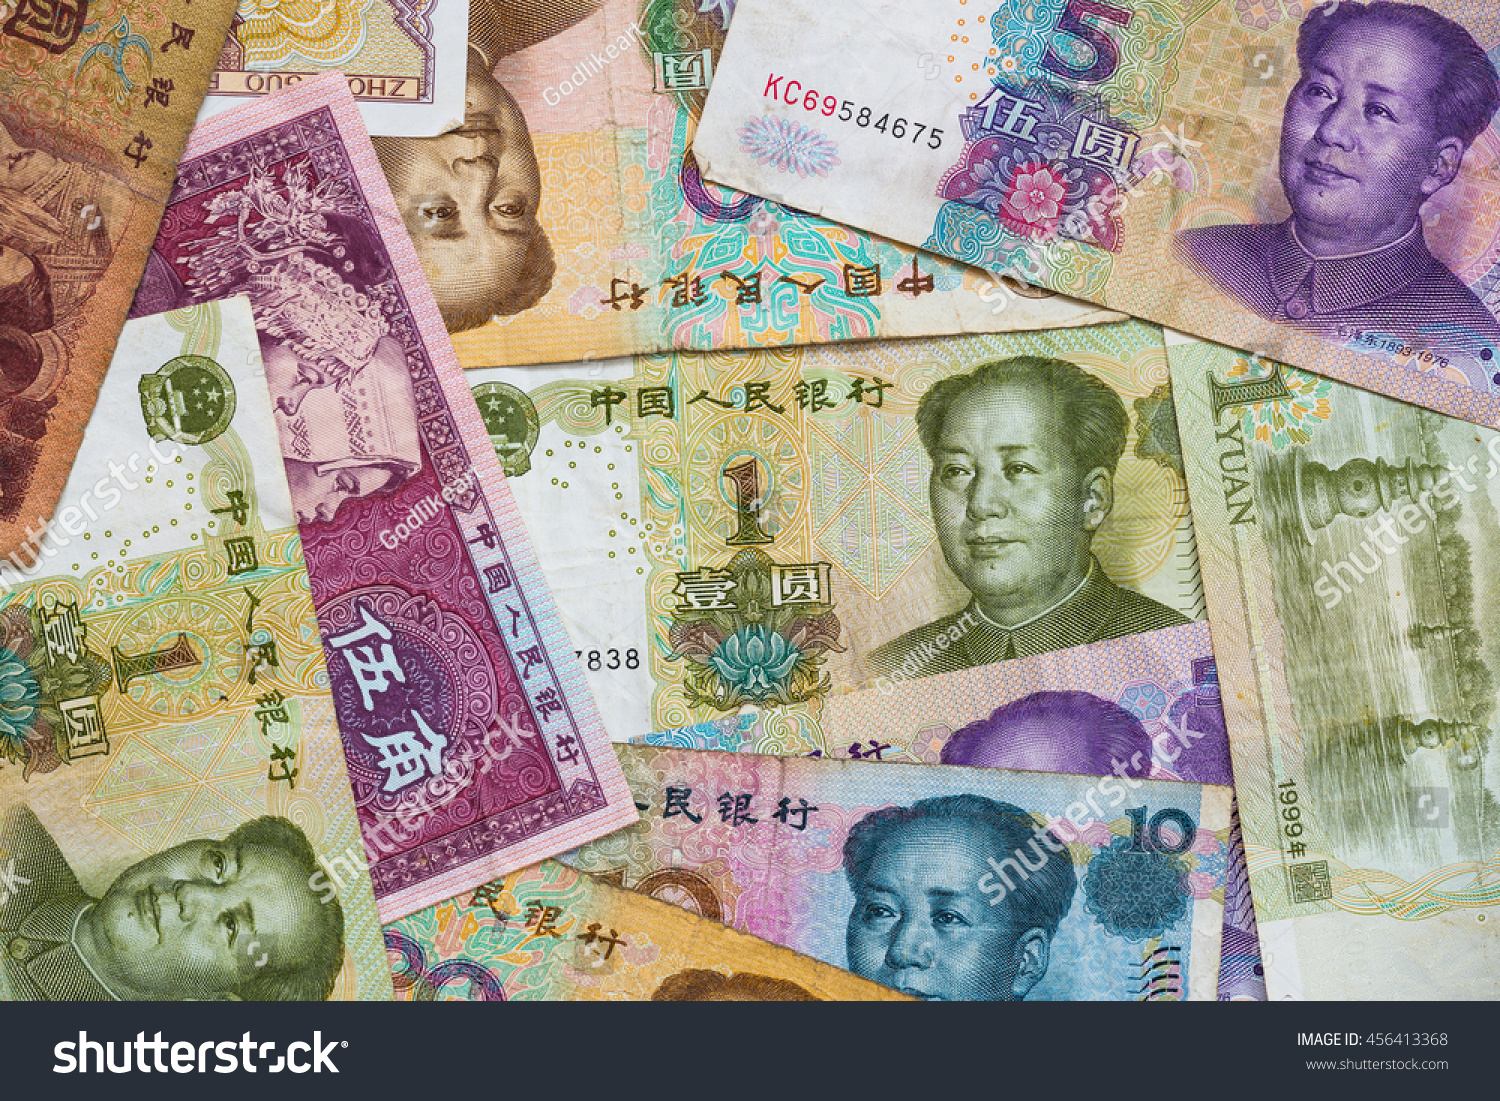 Китайские деньги переводить в рубли. Китайские деньги Мао юани. Бумажные деньги Китая современные. Китайский юань бумажный. Печатать китайские деньги.